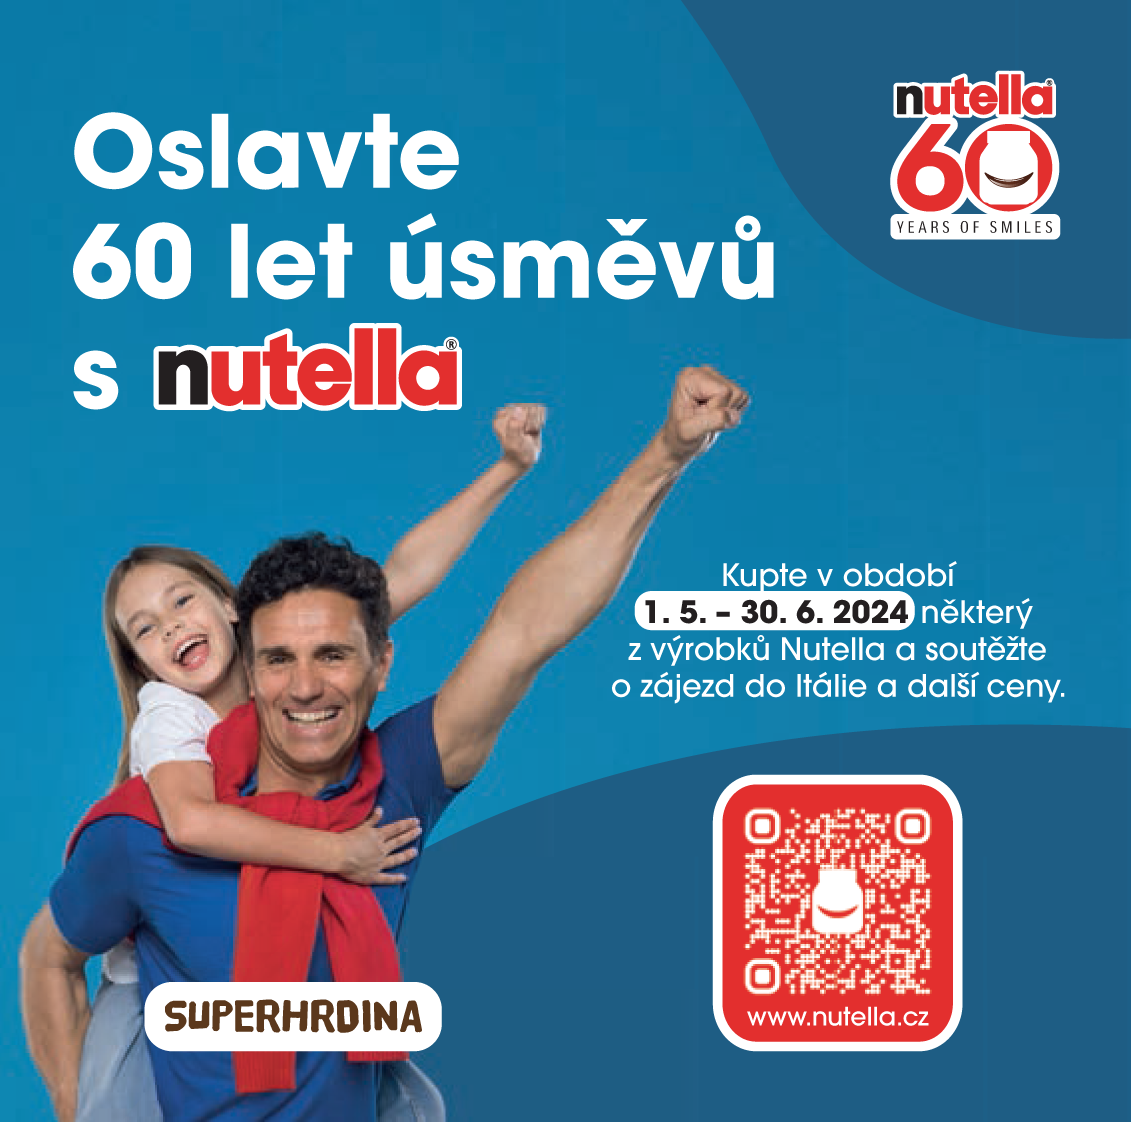 😃 Oslavte 60 let úsměvů s pomazánkou Nutella 😊